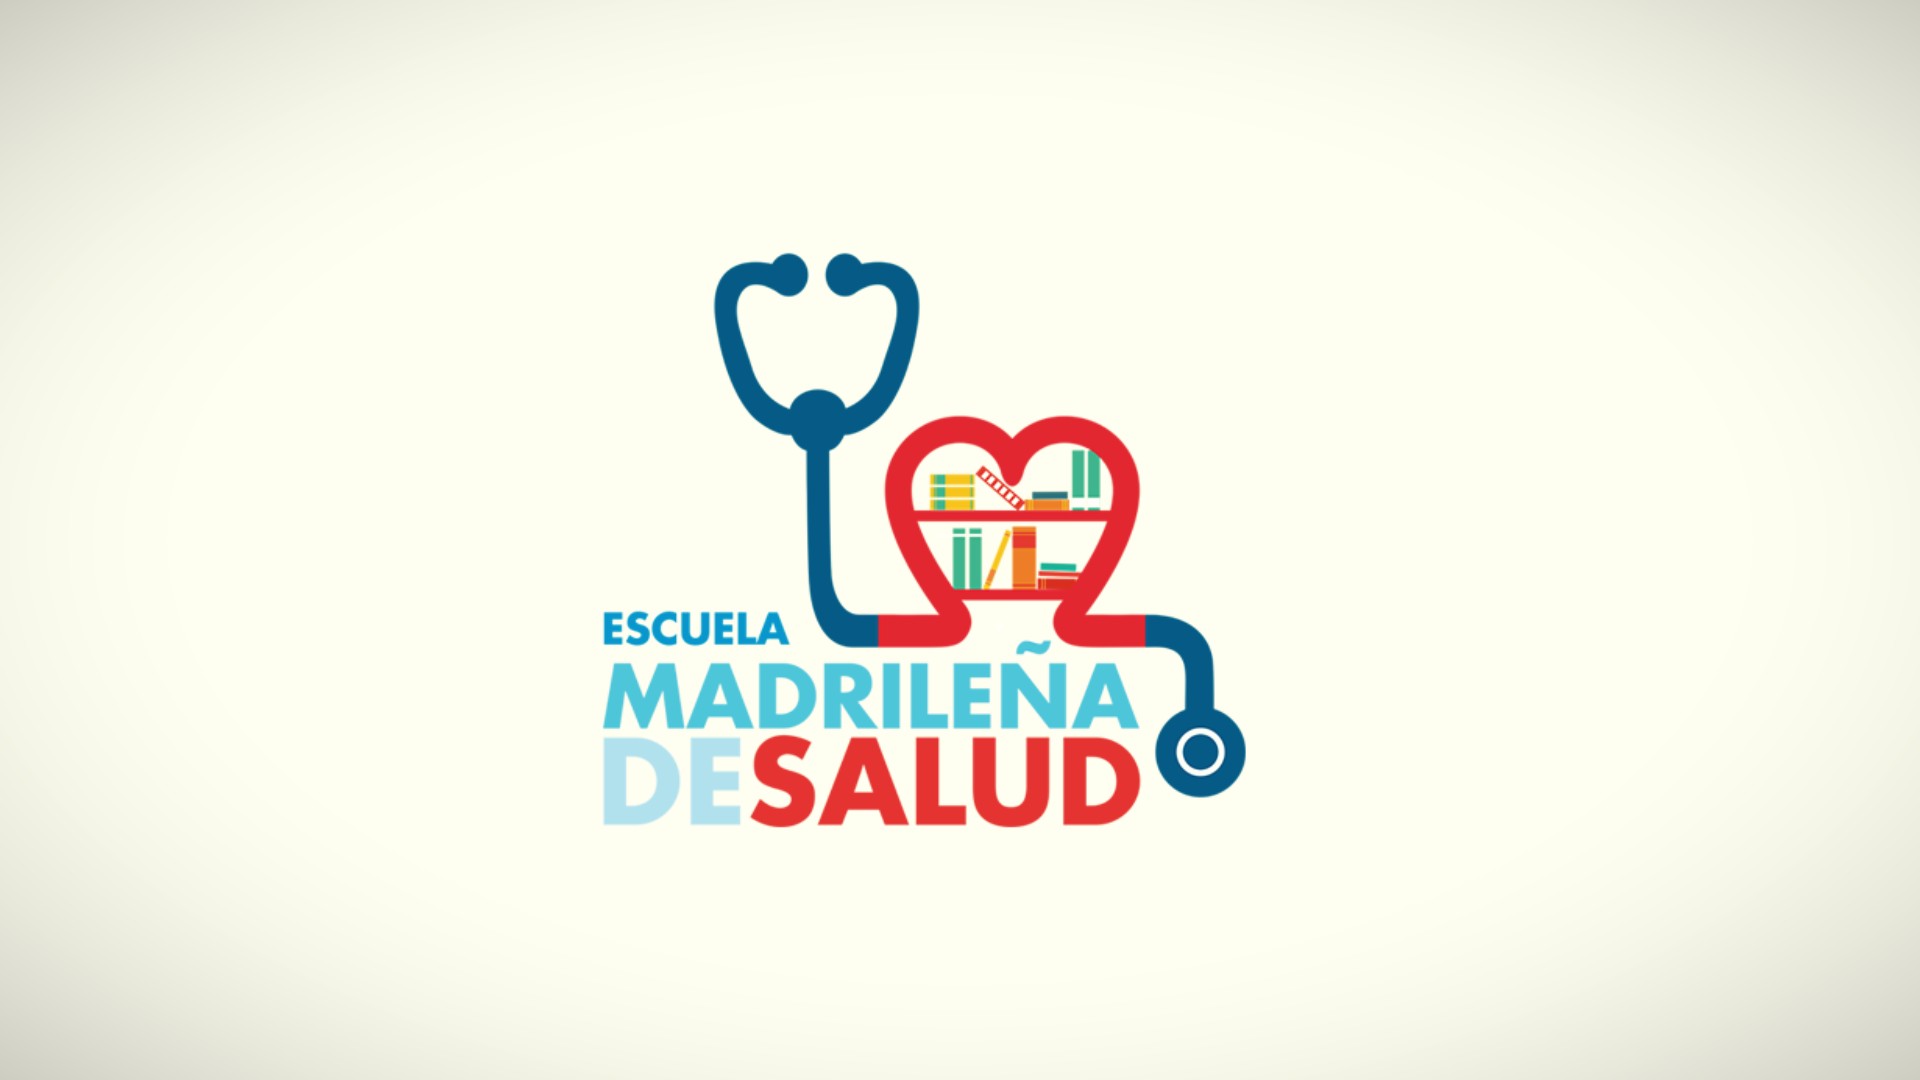 Escuela Madrileña de Salud